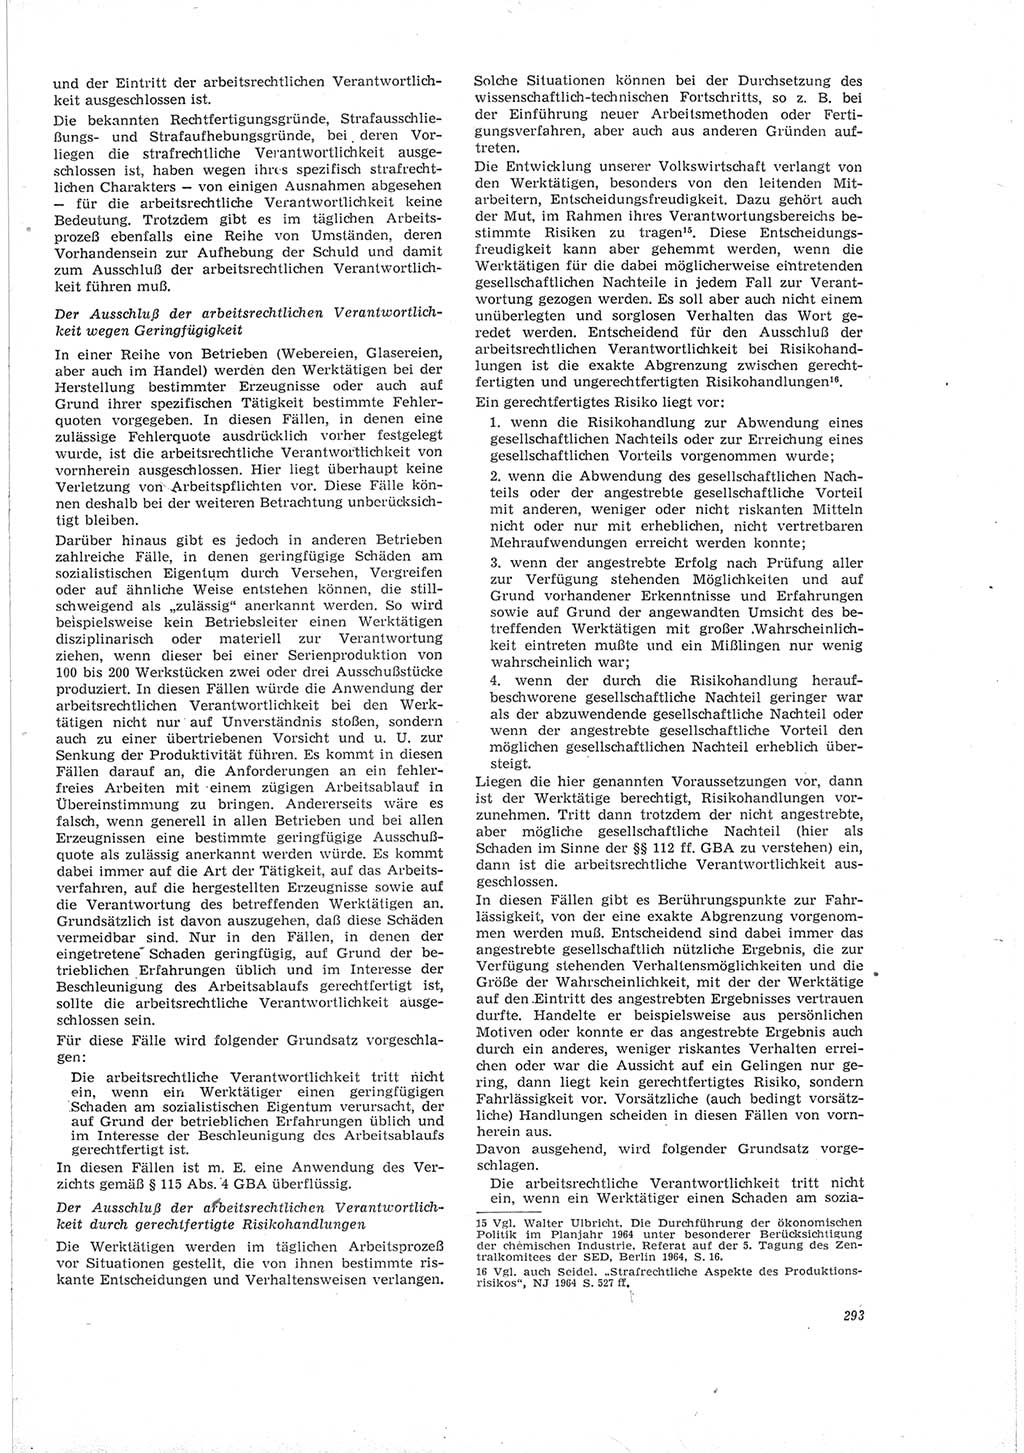 Neue Justiz (NJ), Zeitschrift für Recht und Rechtswissenschaft [Deutsche Demokratische Republik (DDR)], 19. Jahrgang 1965, Seite 293 (NJ DDR 1965, S. 293)